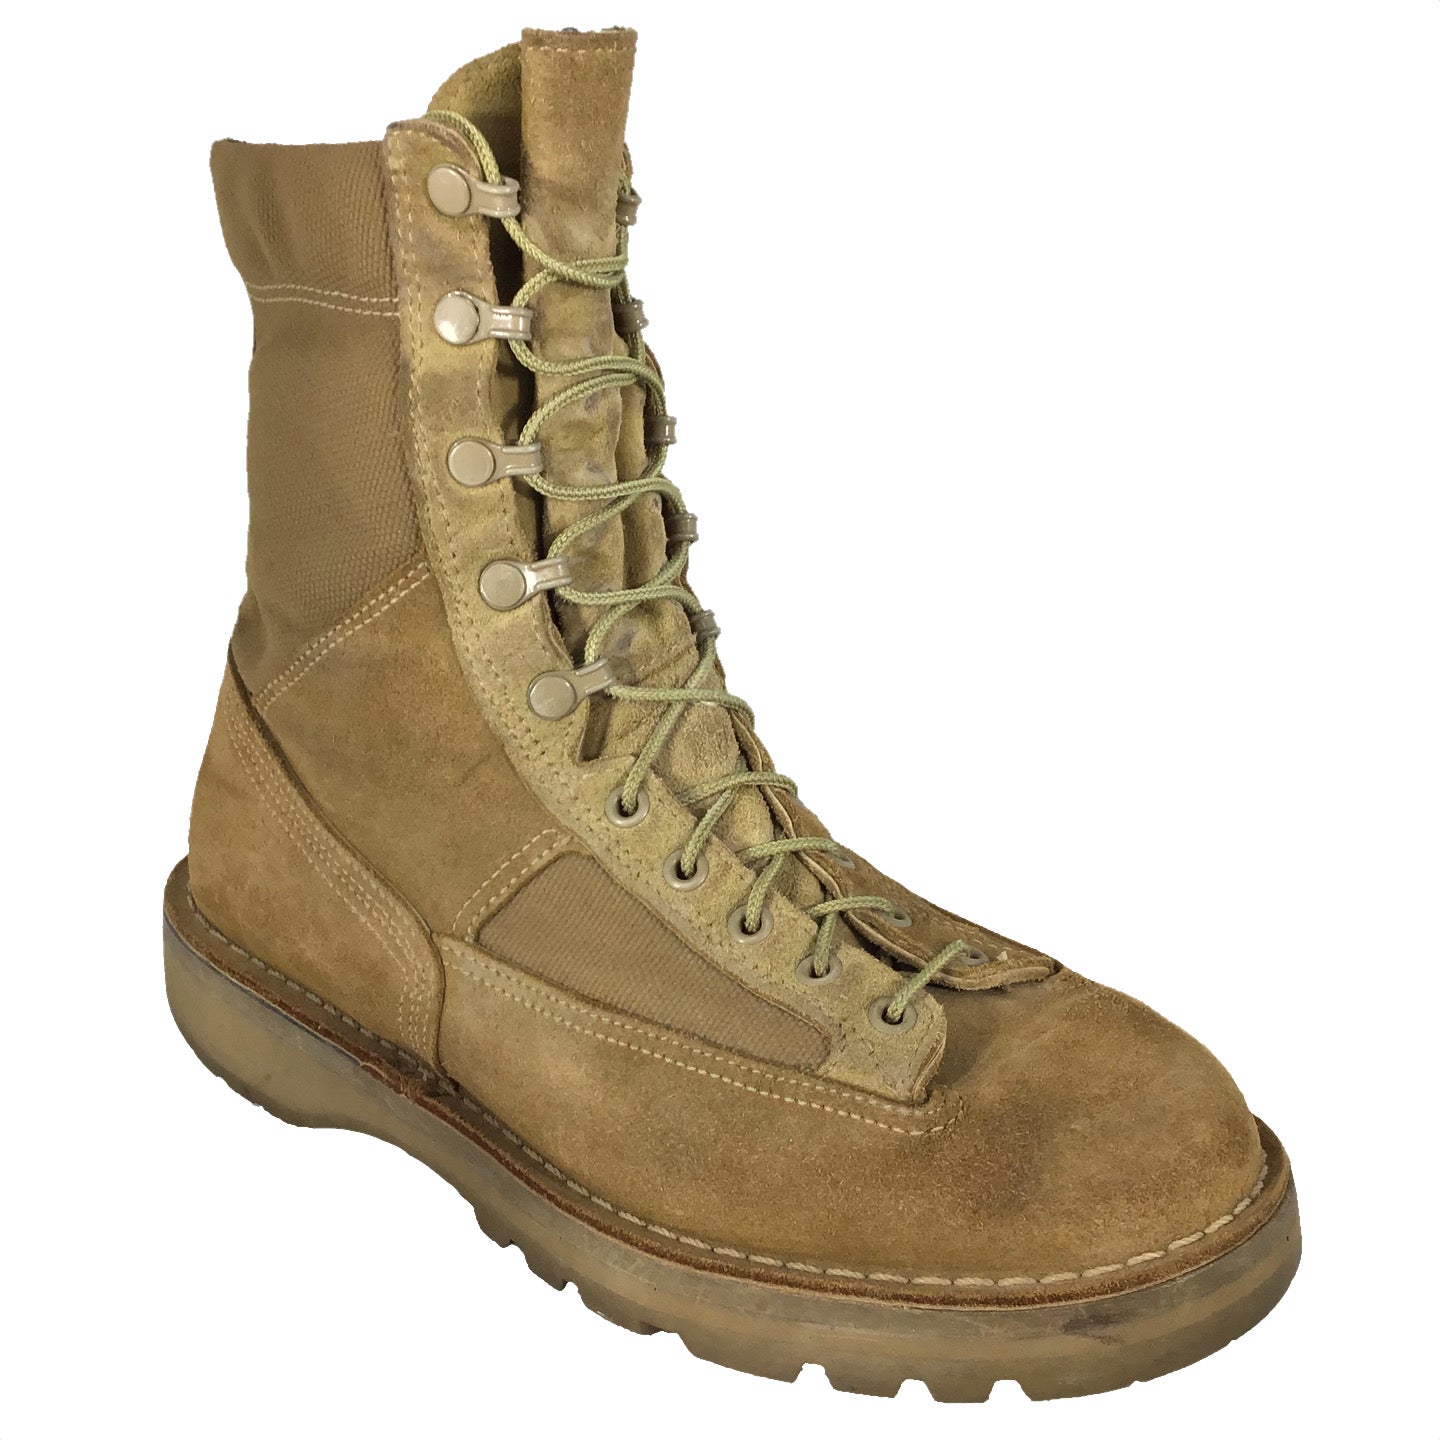 military desert boots cheap